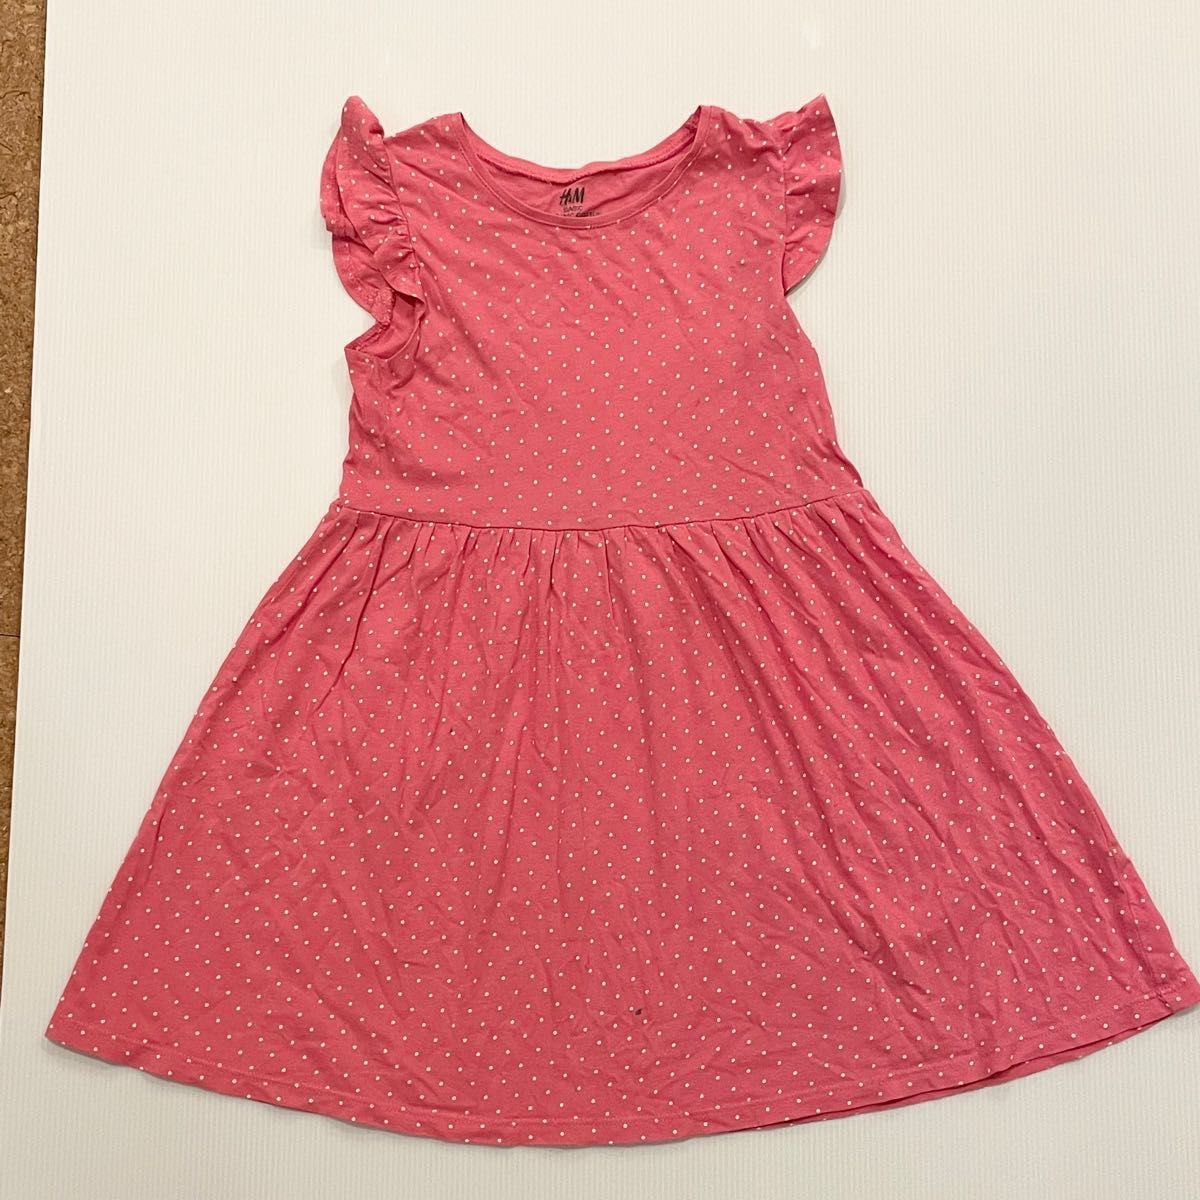 ノースリーブ肩フリル ピンク水玉ワンピース 110サイズ 綿100% おしゃれ 幼稚園 保育園 女の子 夏服